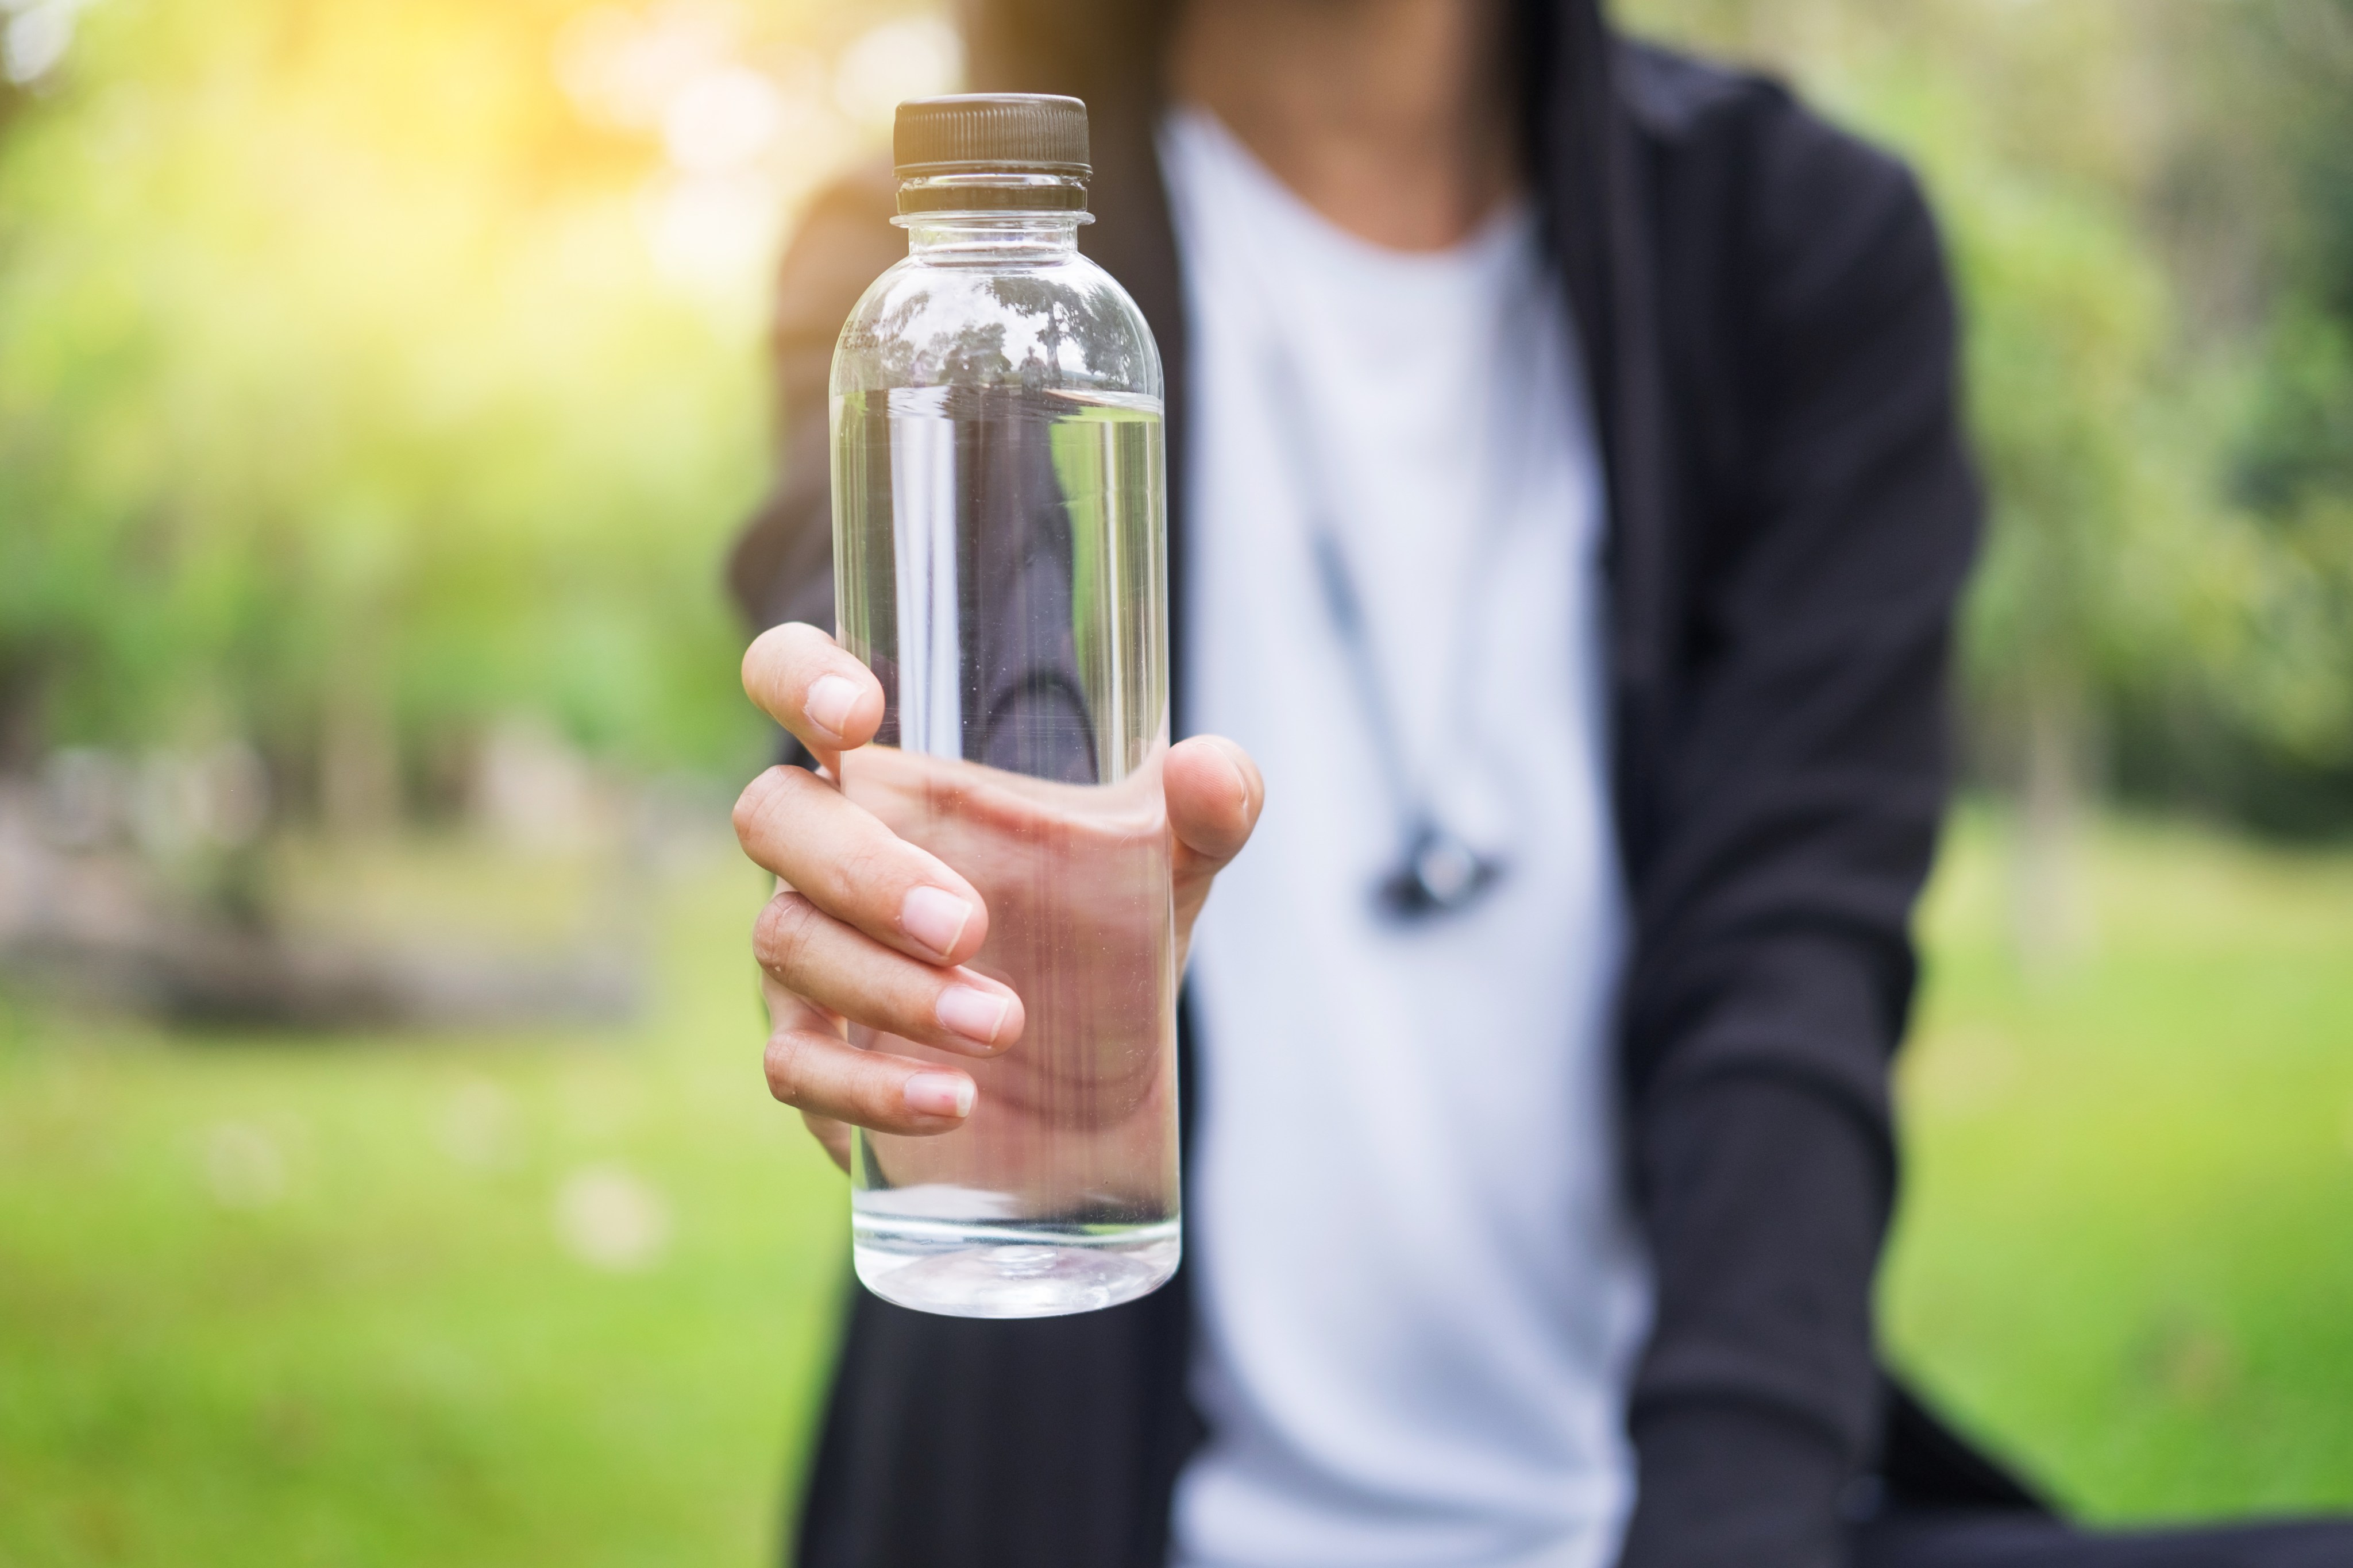 Limpia una vez a la semana tu botella de agua por dentro - Cadena Dial